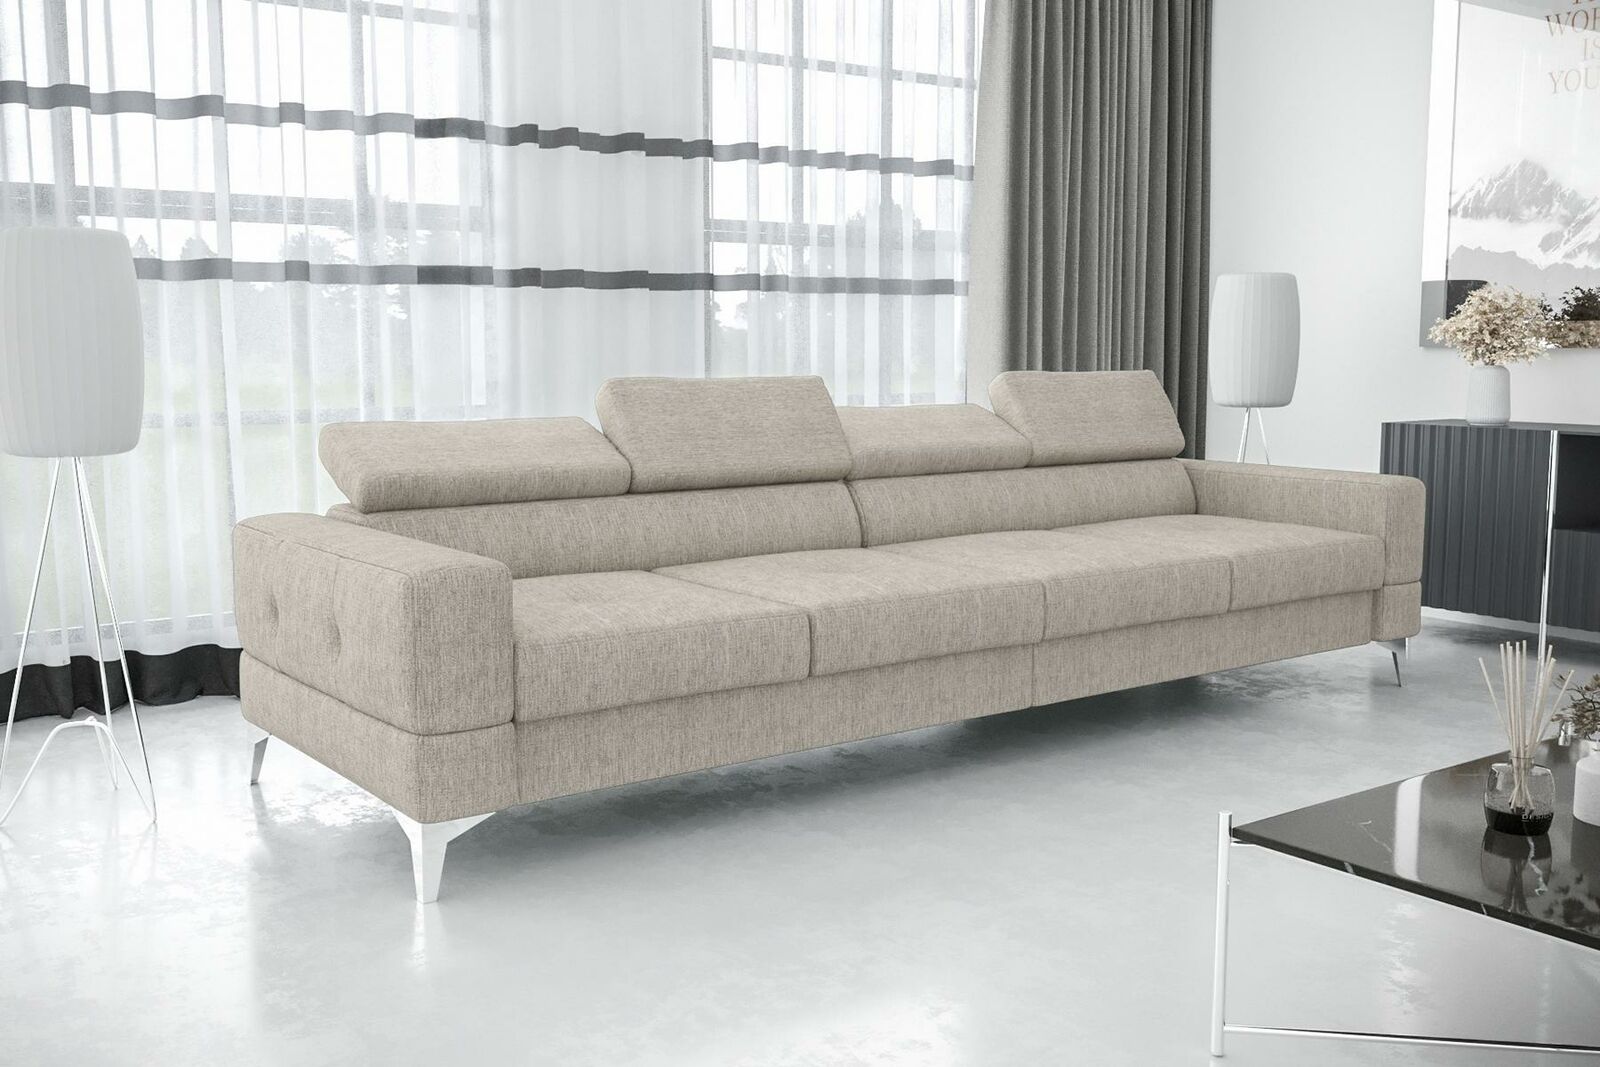 Wohnzimmer Couch Couchen Polster Sofas xxl Design Sofa 4 Sitzer Textil Big Neu